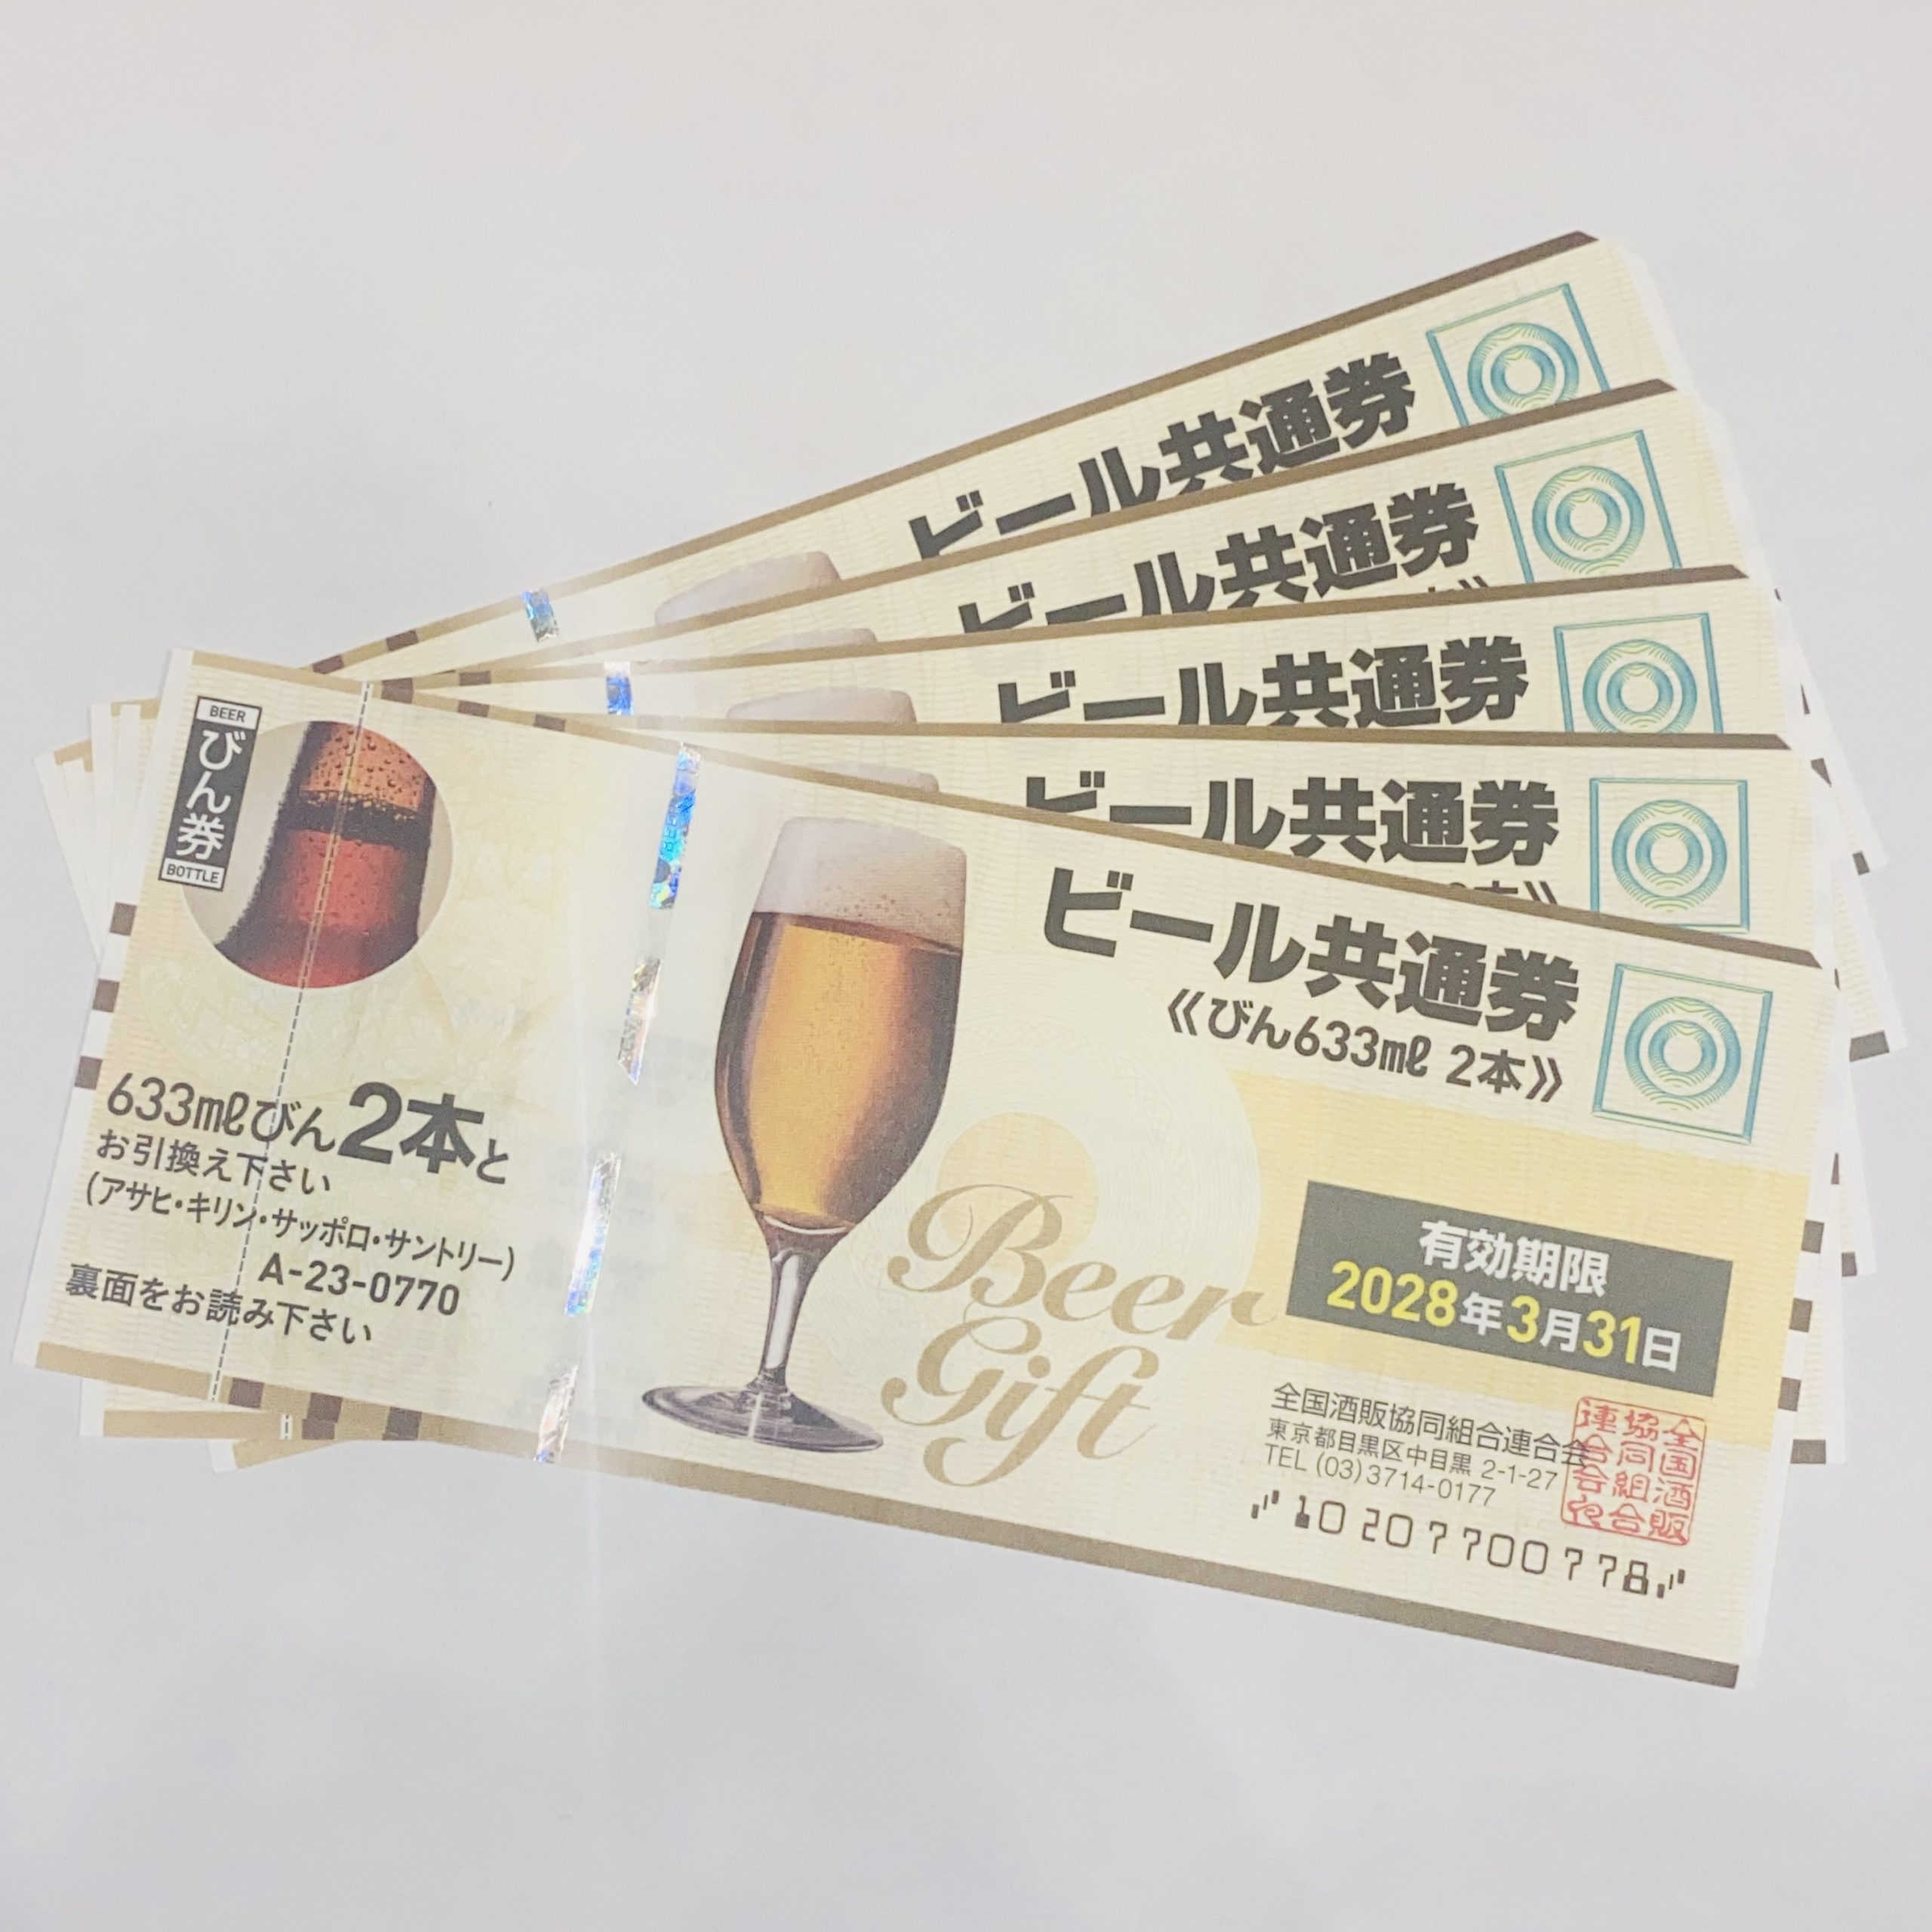 ビール共通券 770円